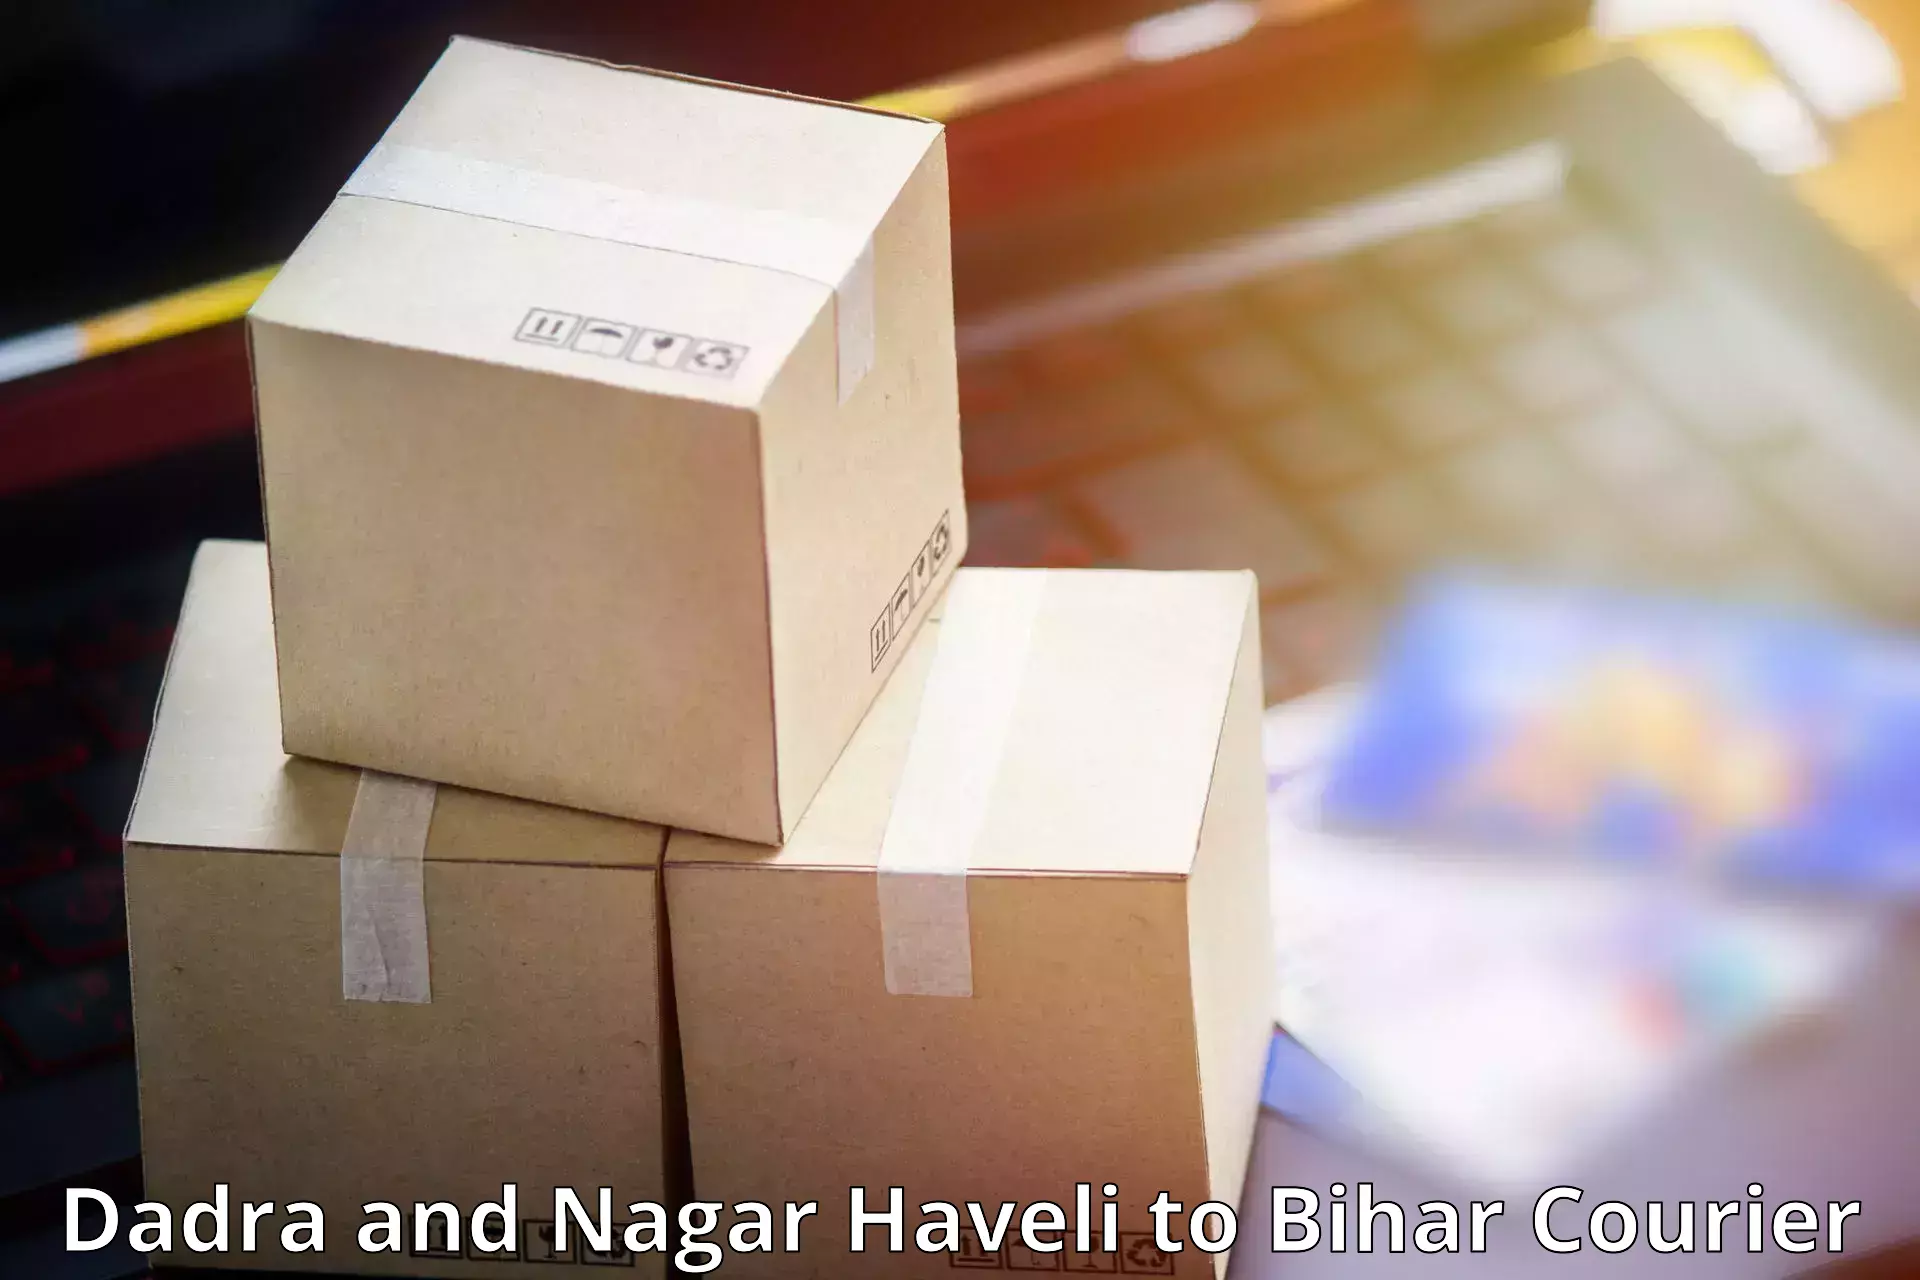 Reliable shipping partners Dadra and Nagar Haveli to Marhowrah